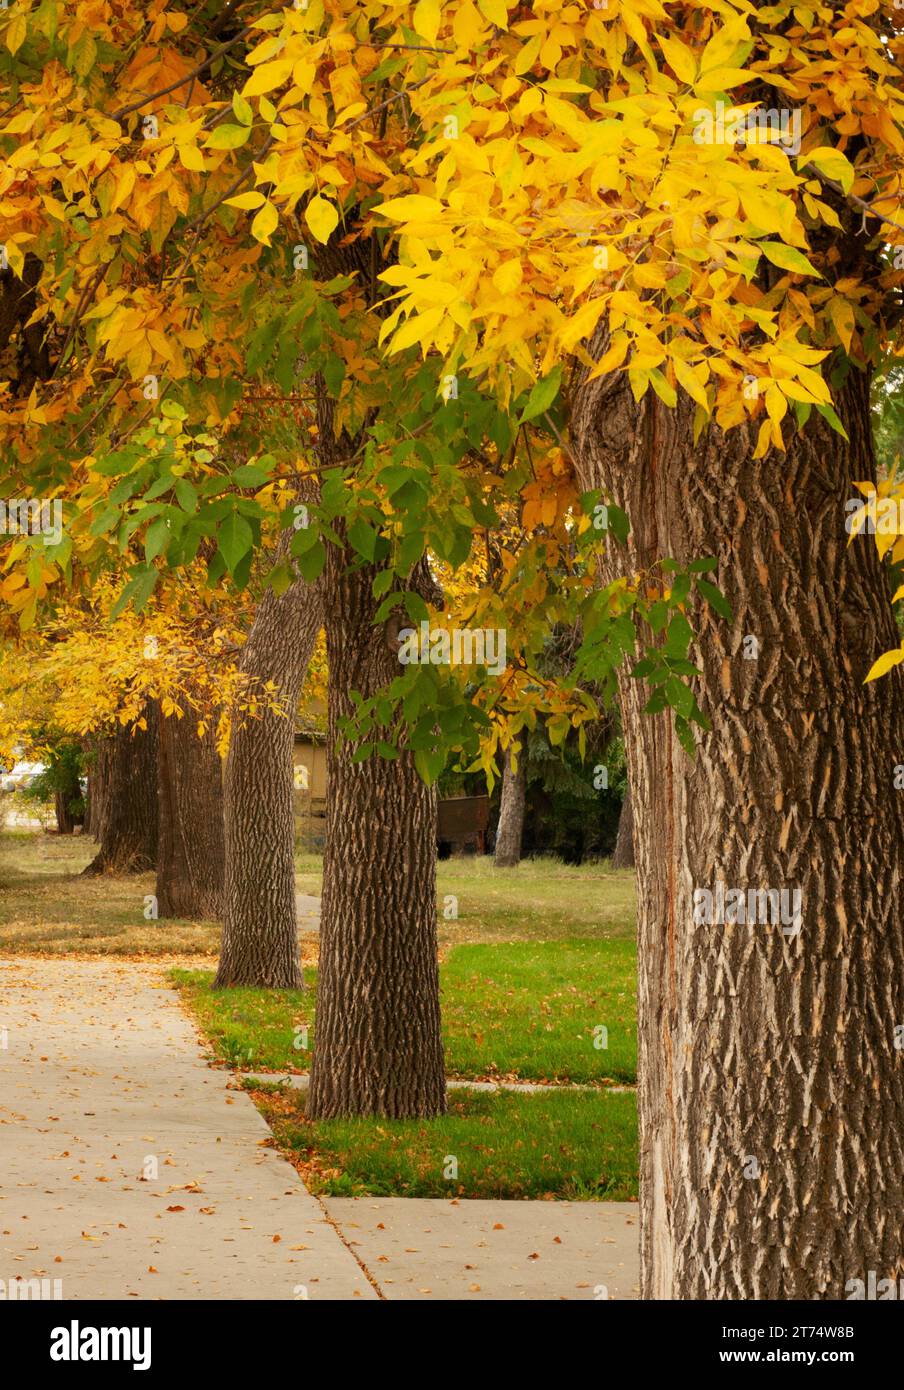 Rangée d'arbres en automne ont des feuilles vertes virant au jaune. Observez les troncs d'arbres robustes avec une écorce saine et épaisse. Sentiers de trottoir au loin. Banque D'Images